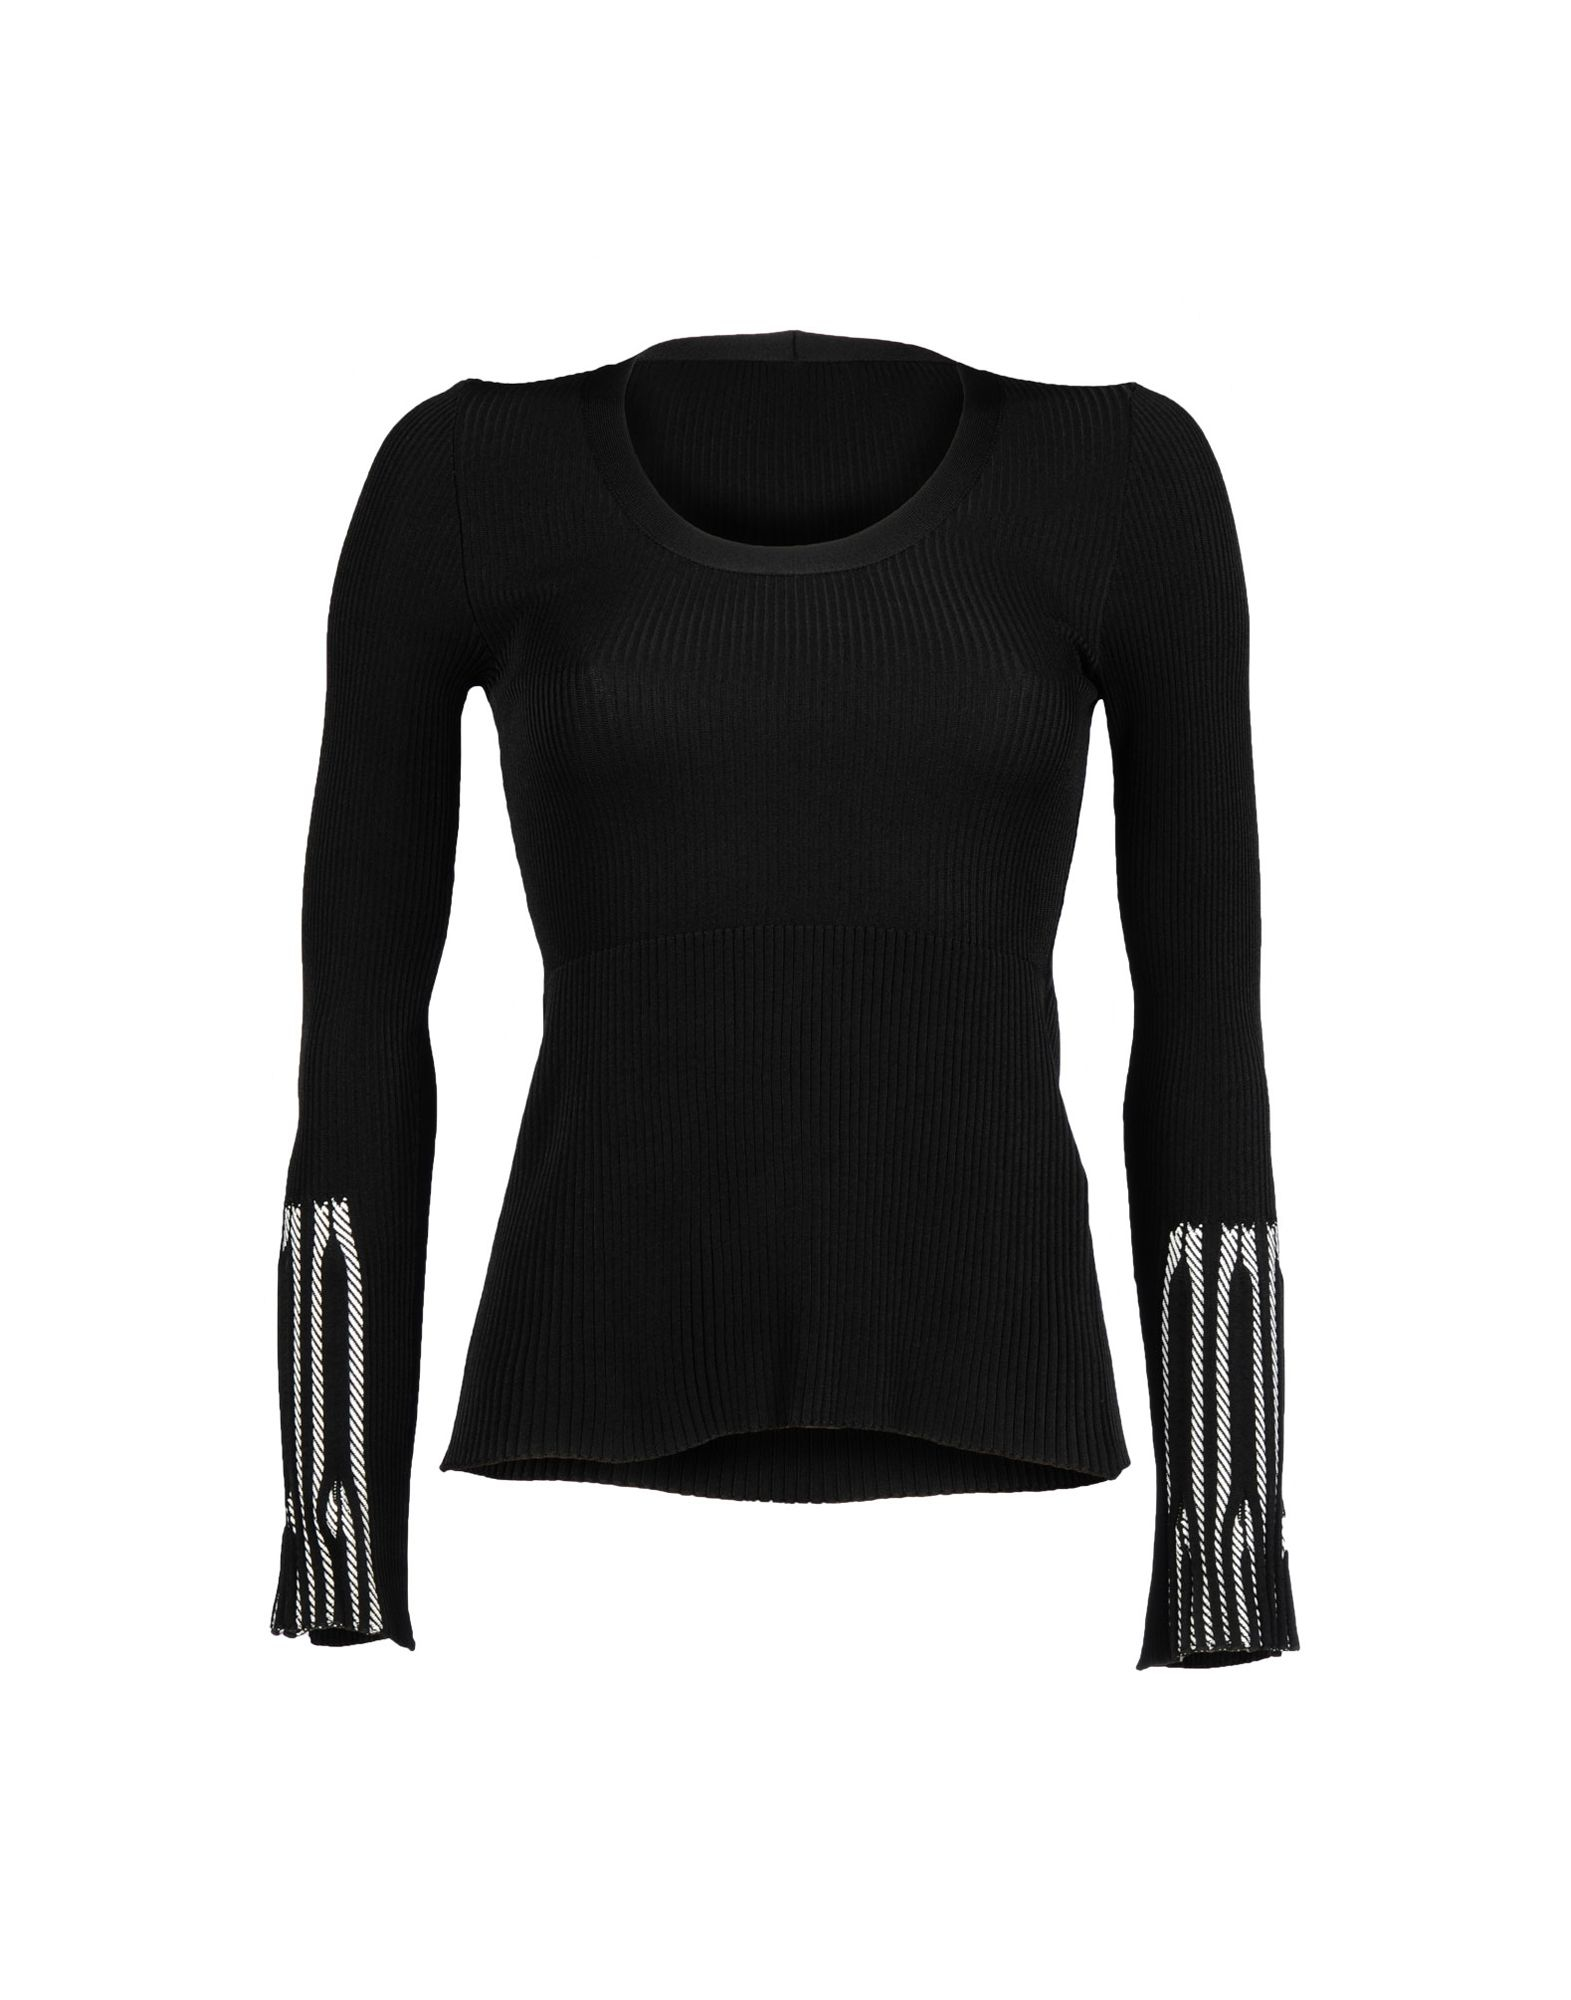 Sonia Rykiel Synthetic Sweaters in Black - Lyst